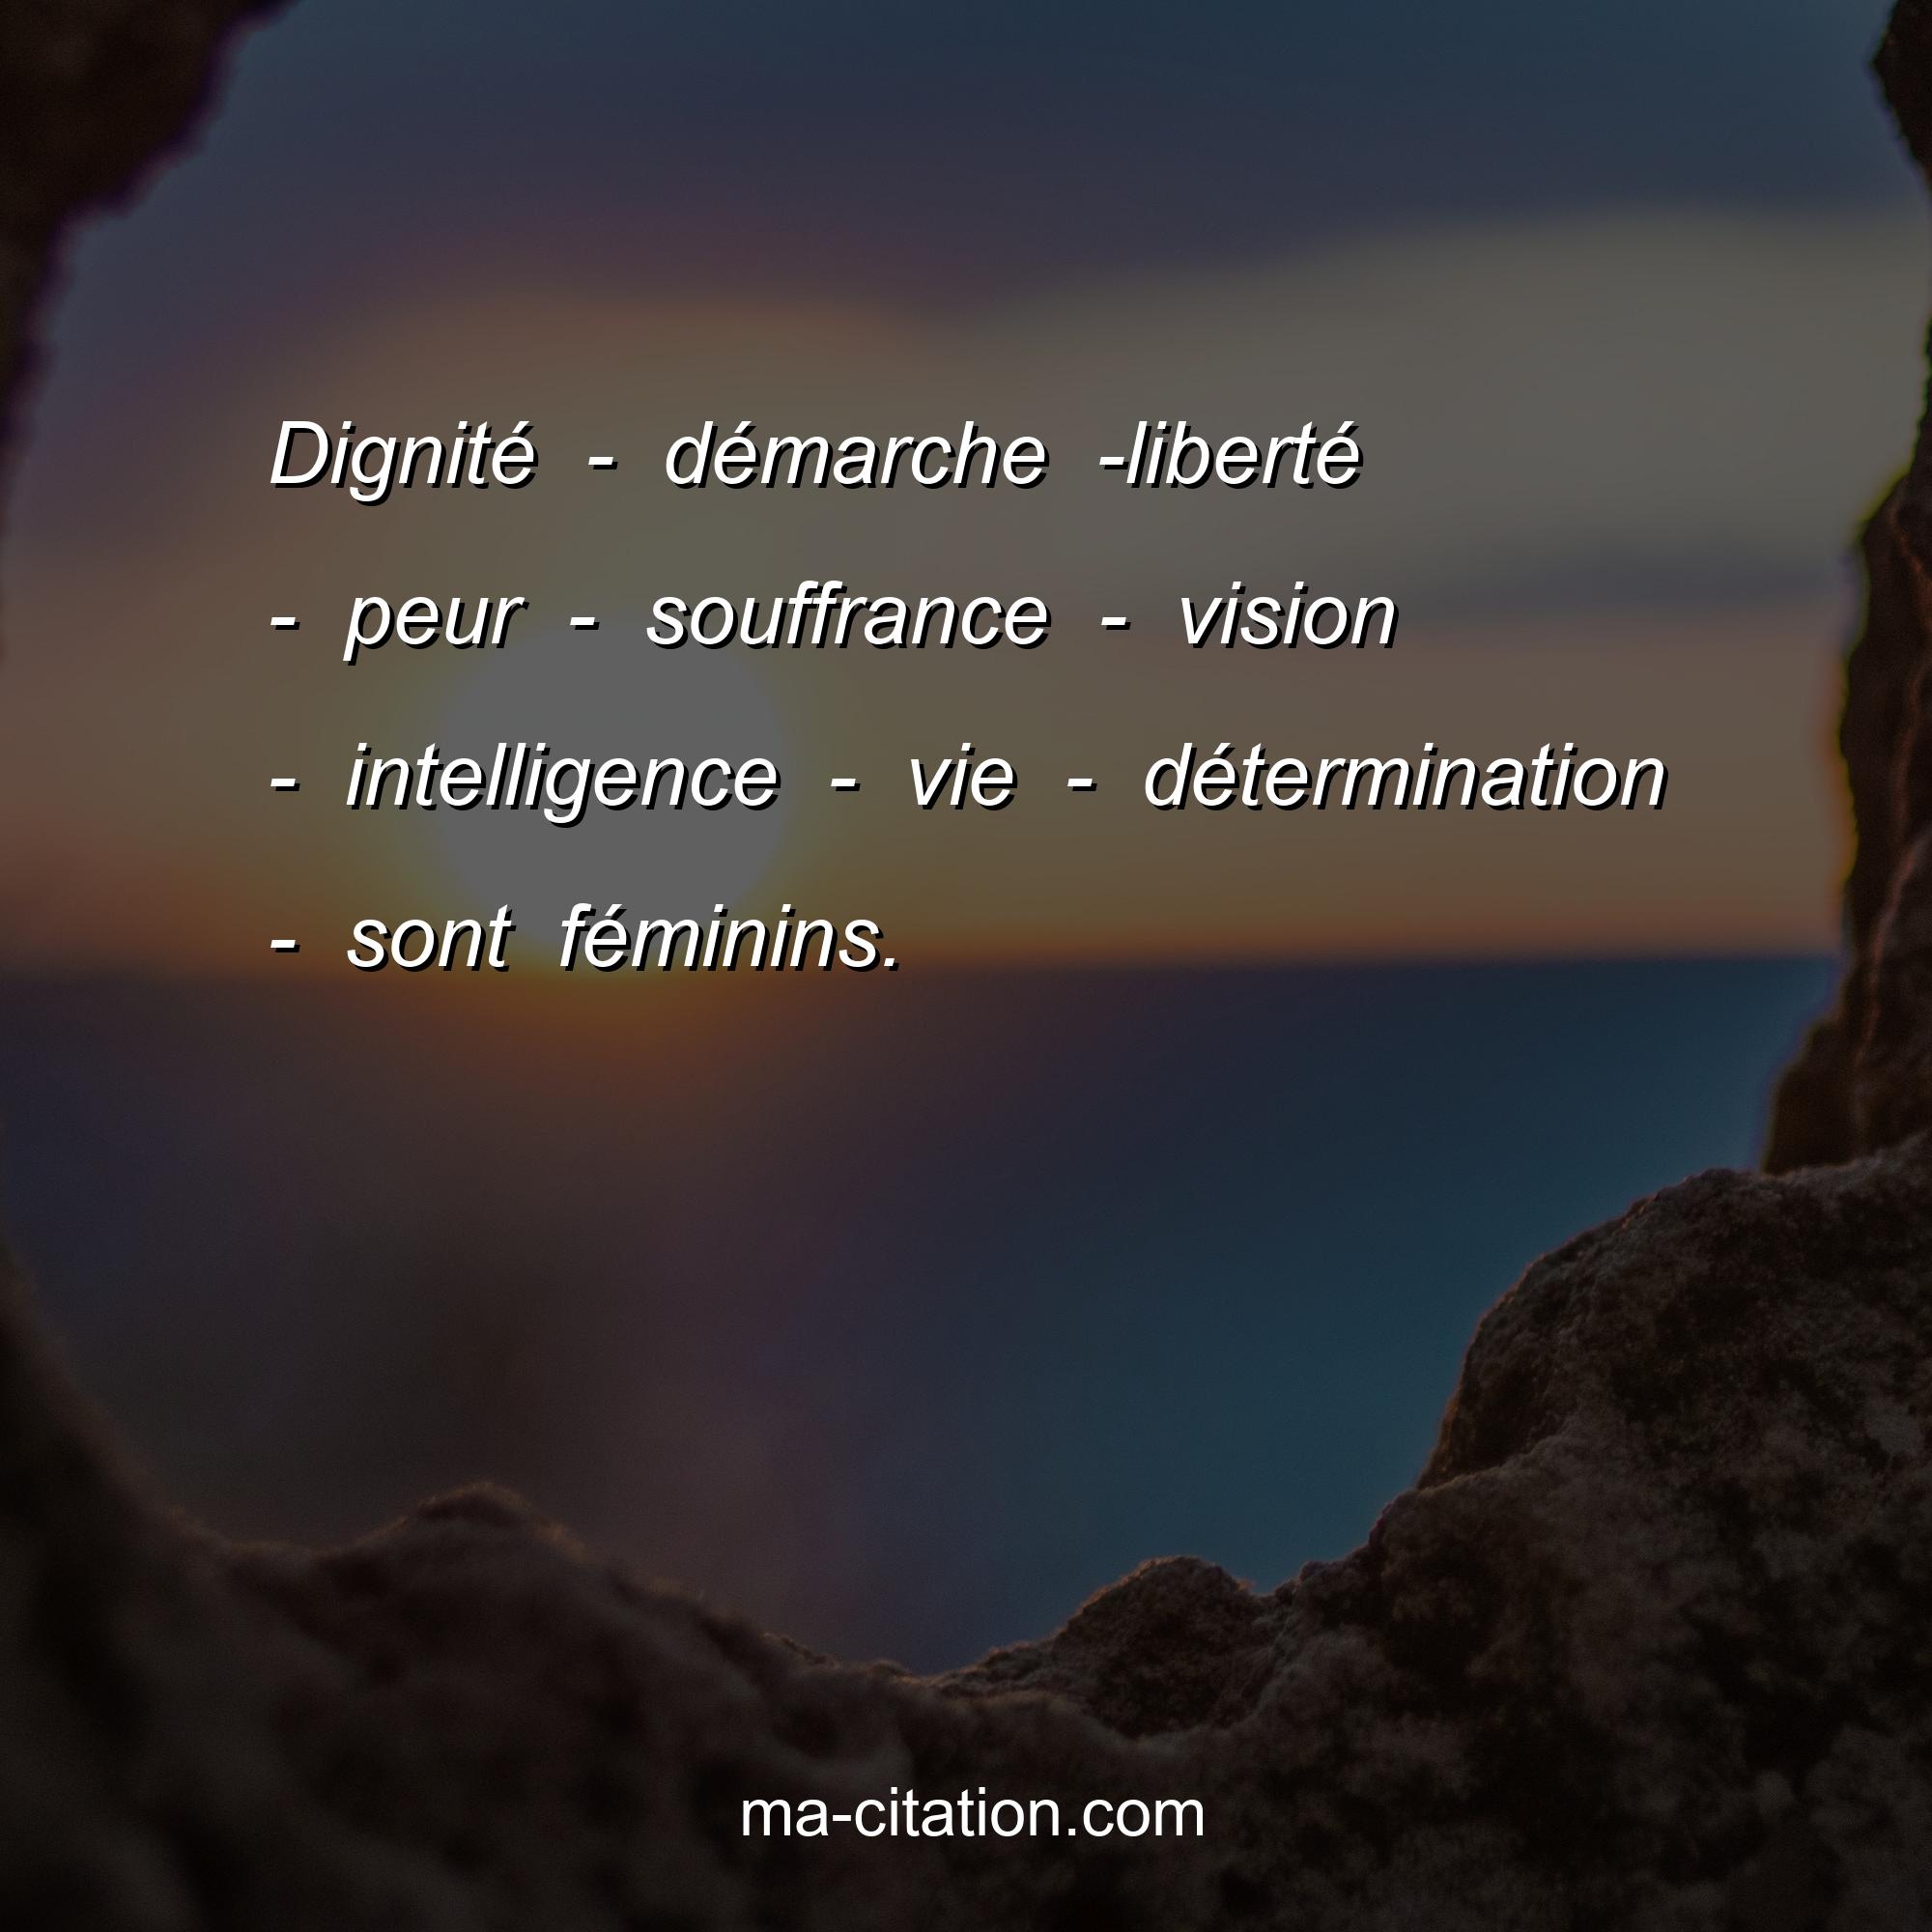 Ma-Citation.com : Dignité - démarche -liberté - peur - souffrance - vision - intelligence - vie - détermination - sont féminins.